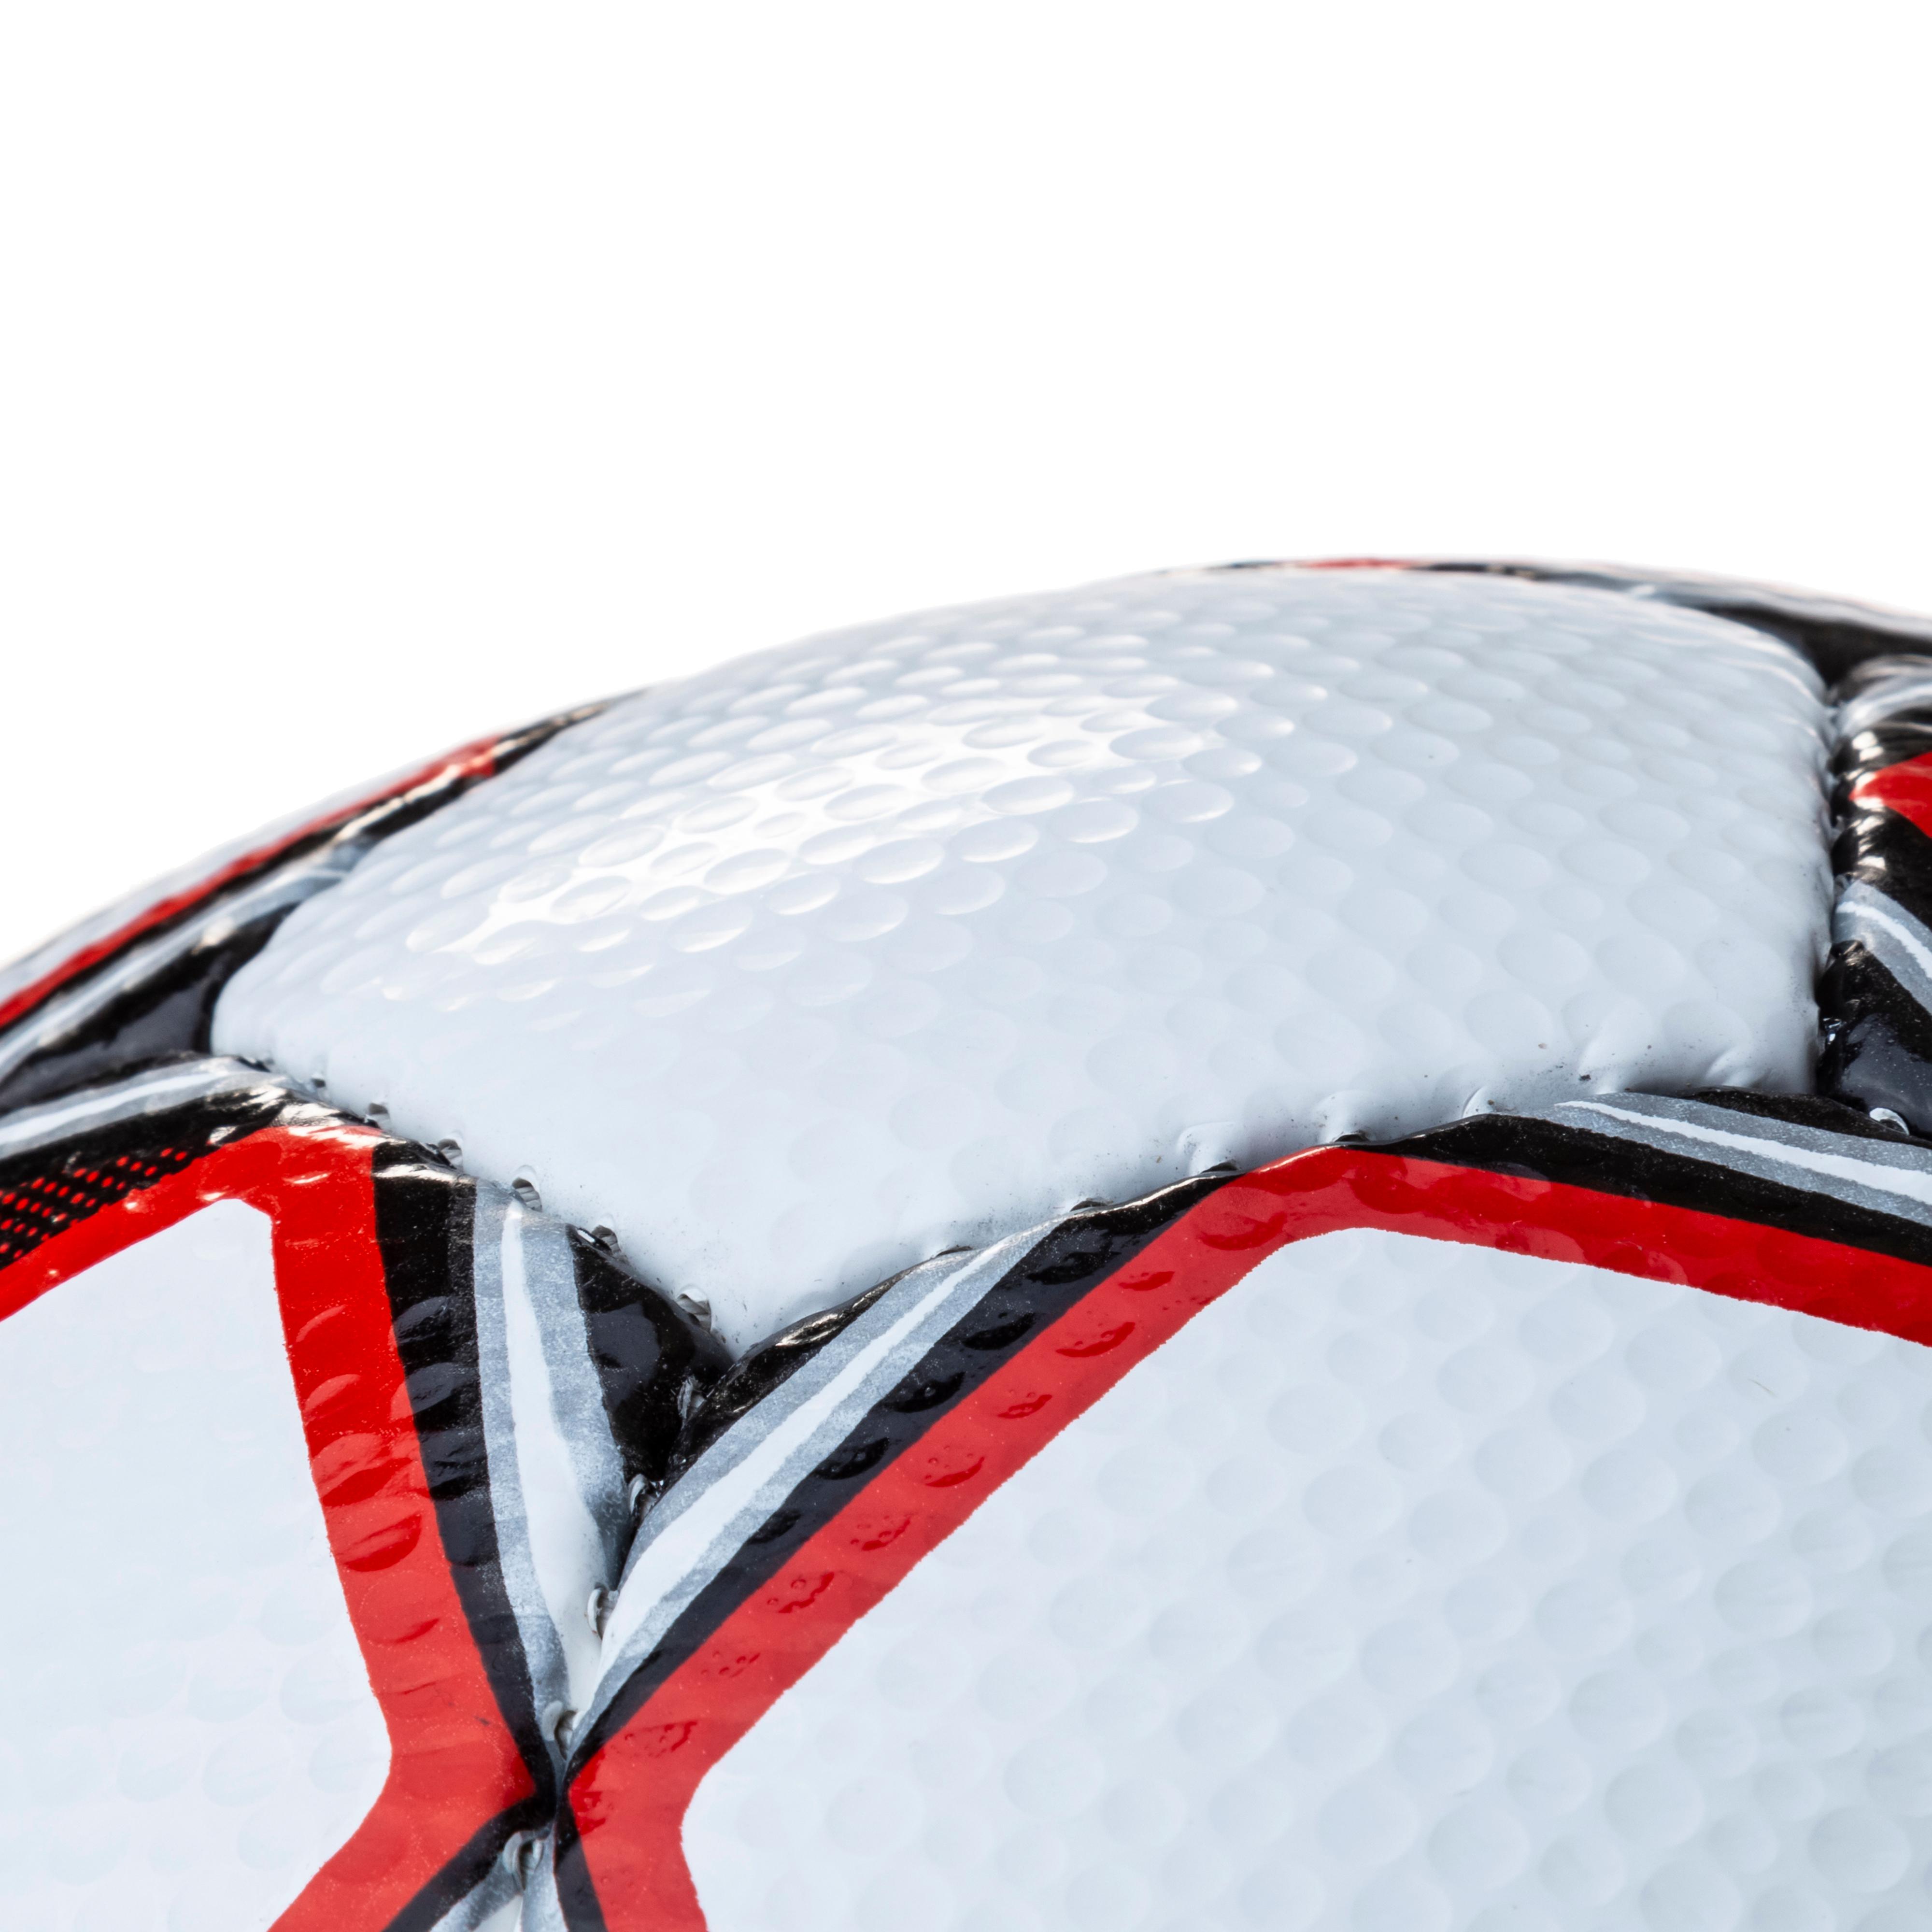 TT weiss Fußball Apus Fußball Shop rot von im SportScheck Derbystar Online kaufen